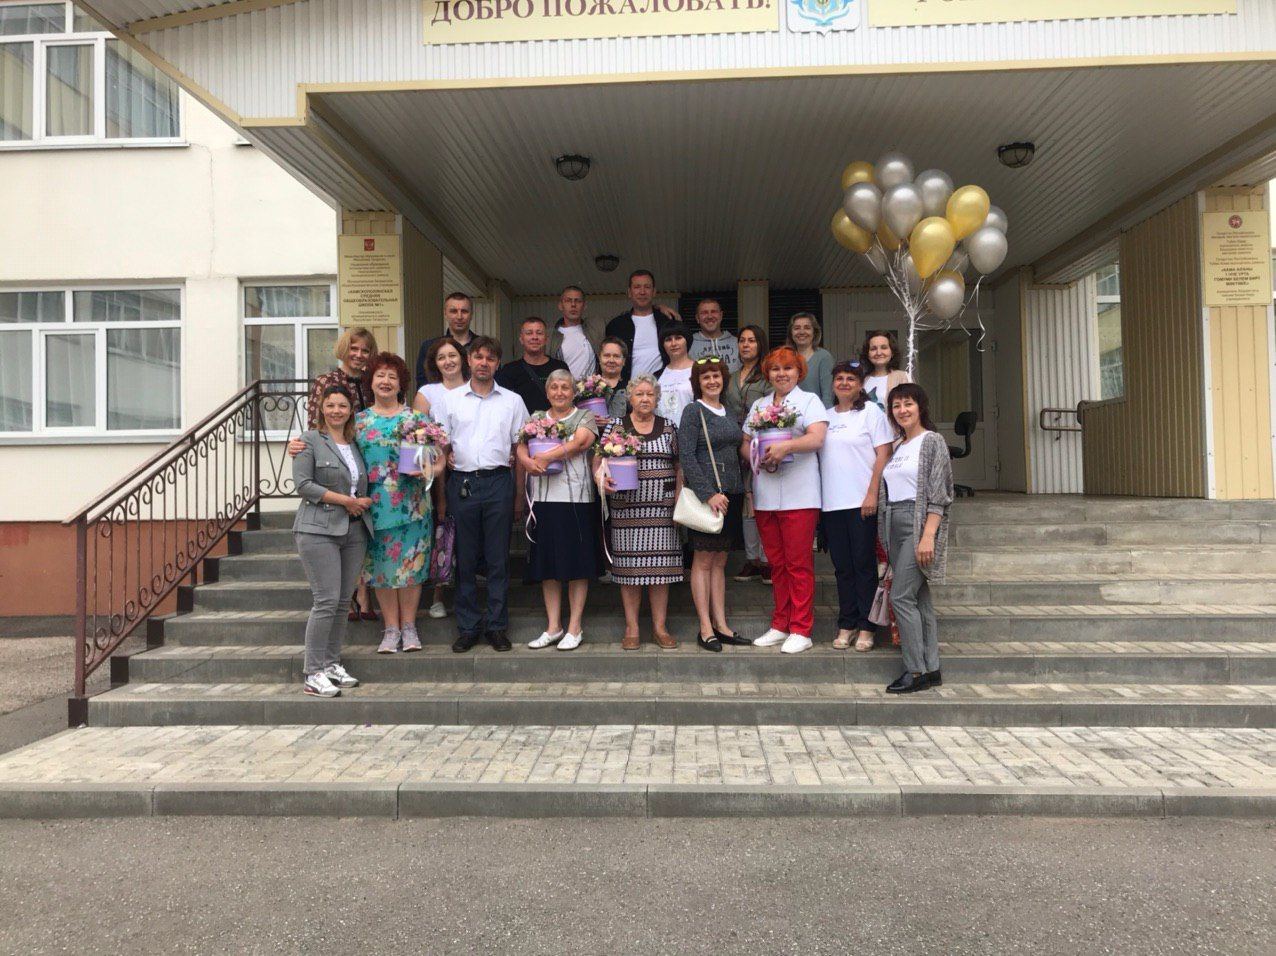 Выпускники камполянской школы №1 организовали замечательный праздник «Выпуск 25 лет спустя»